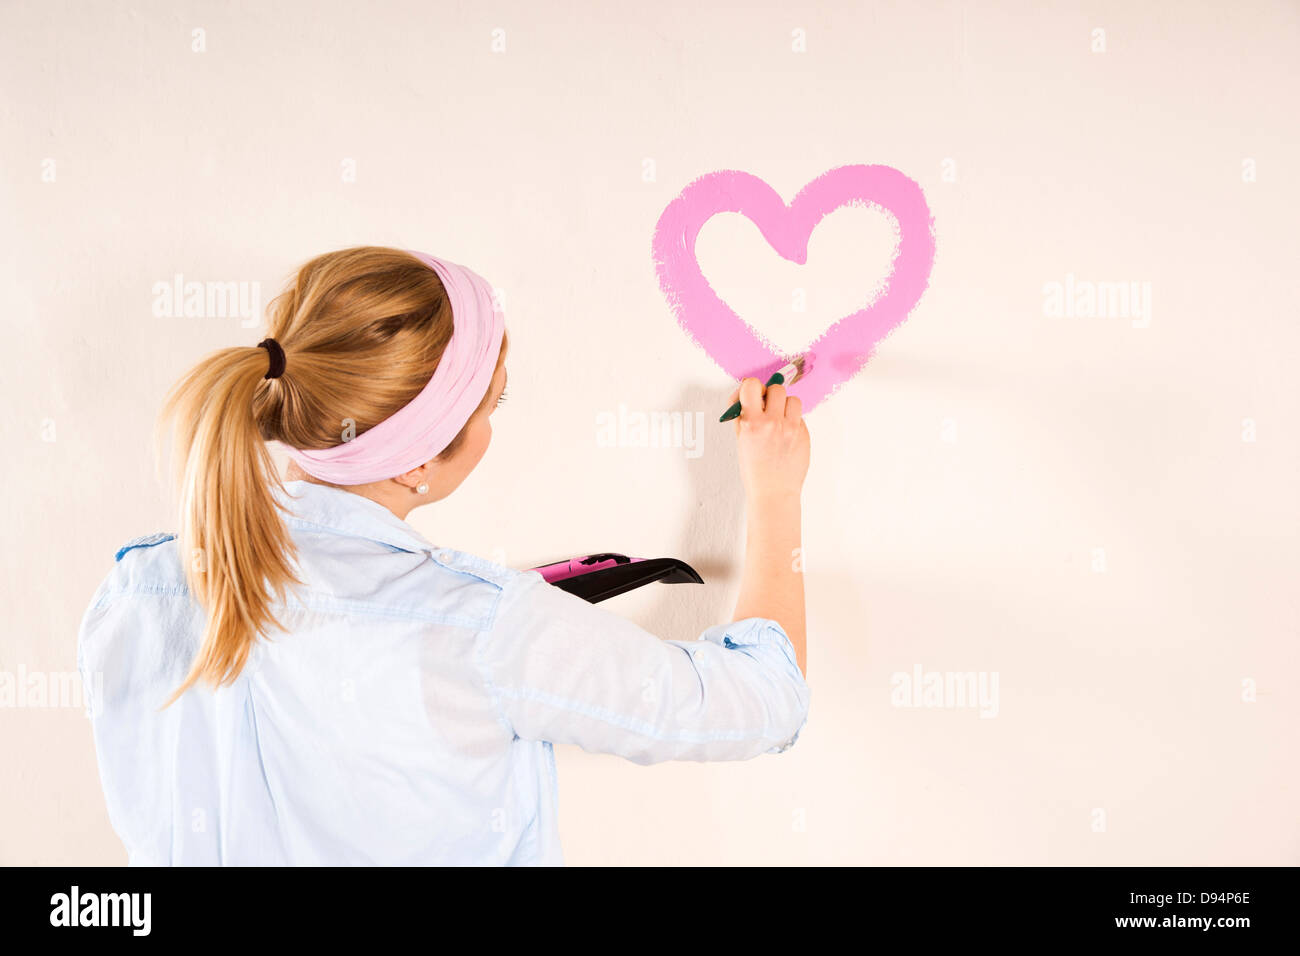 Foto de estudio de joven corazón de pintura en la pared Foto de stock